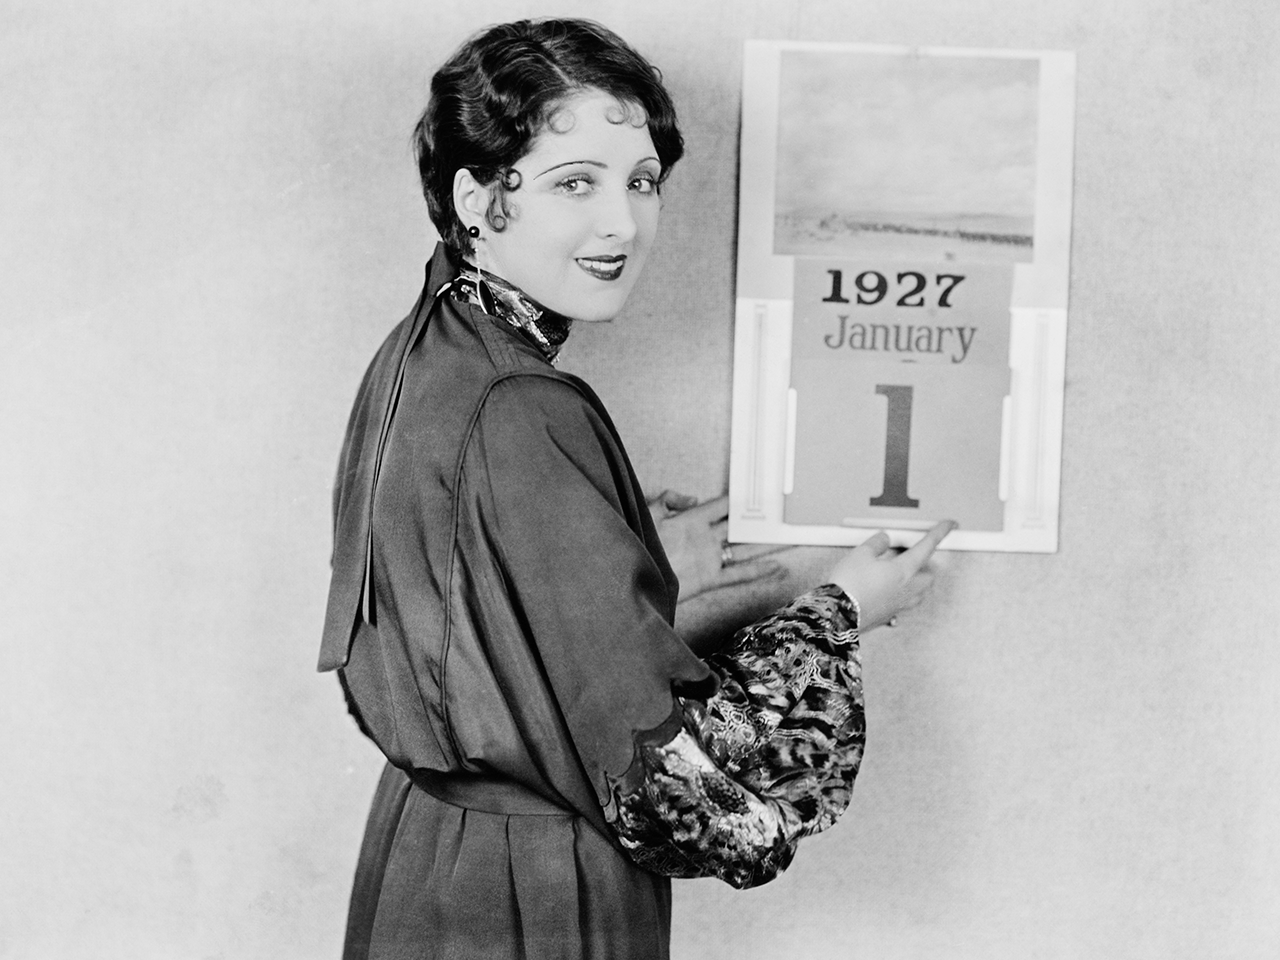 Photographie ancienne d'une femme devant un calendrier